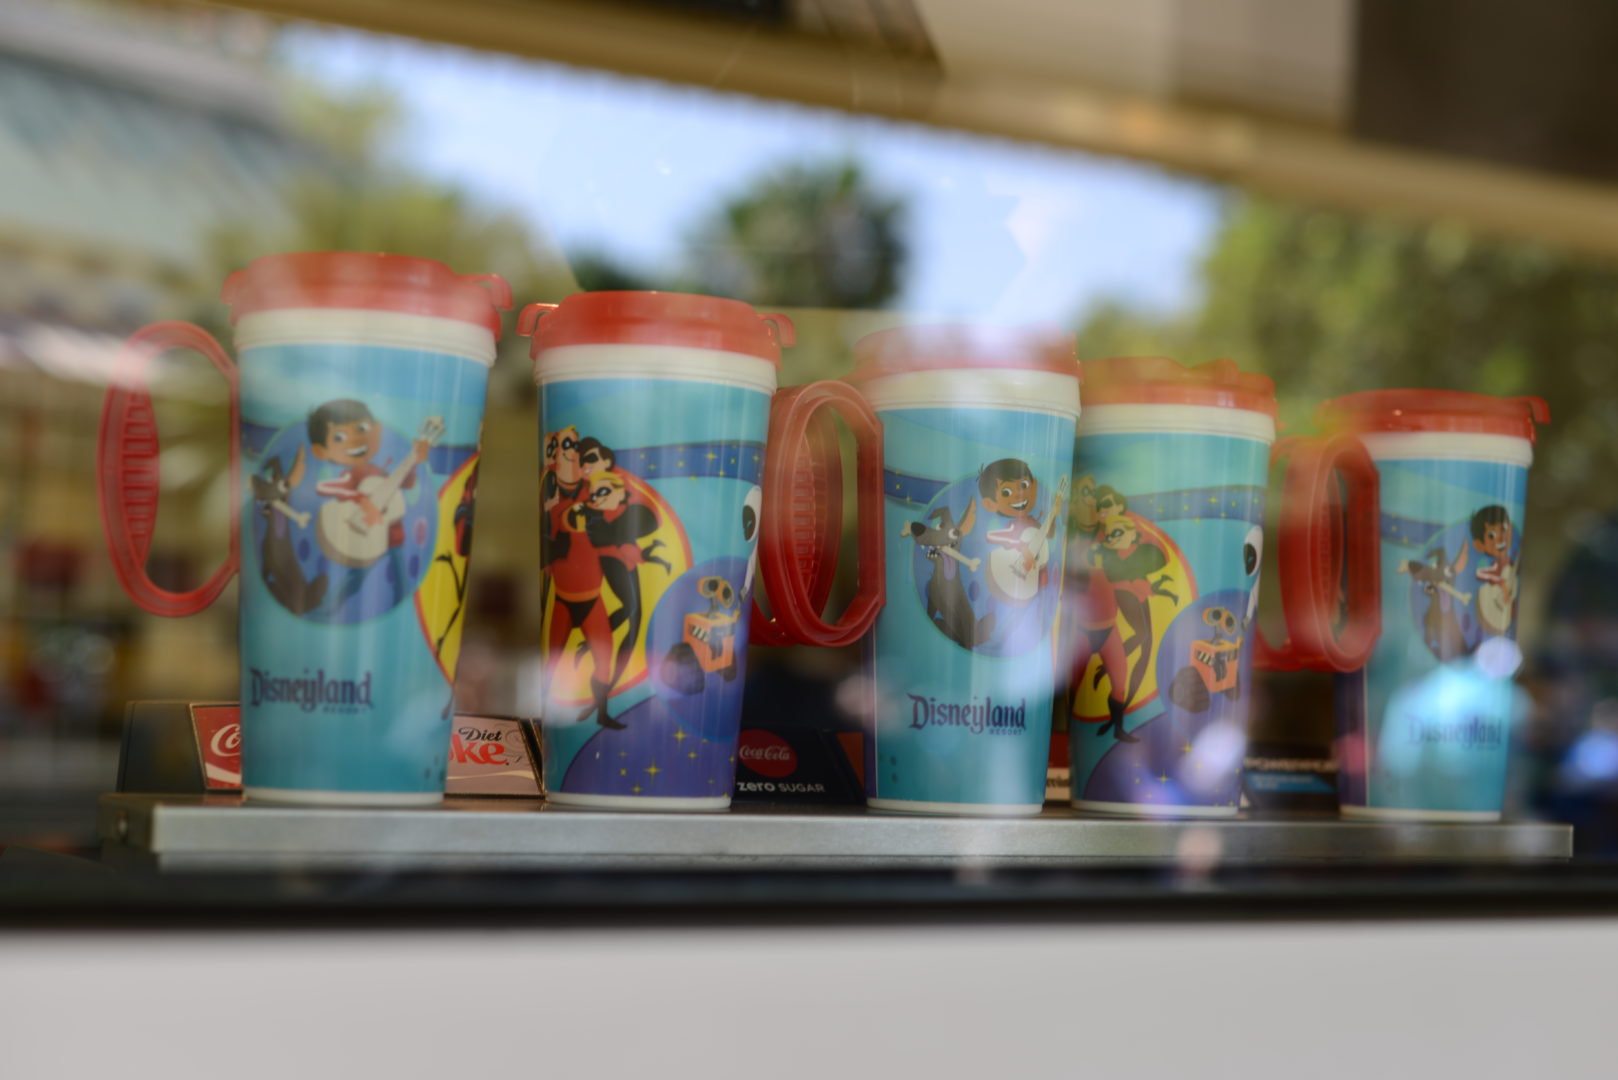 Souvenir Coco Refillable Plastic Cups for Disneyland's Pixar Fest